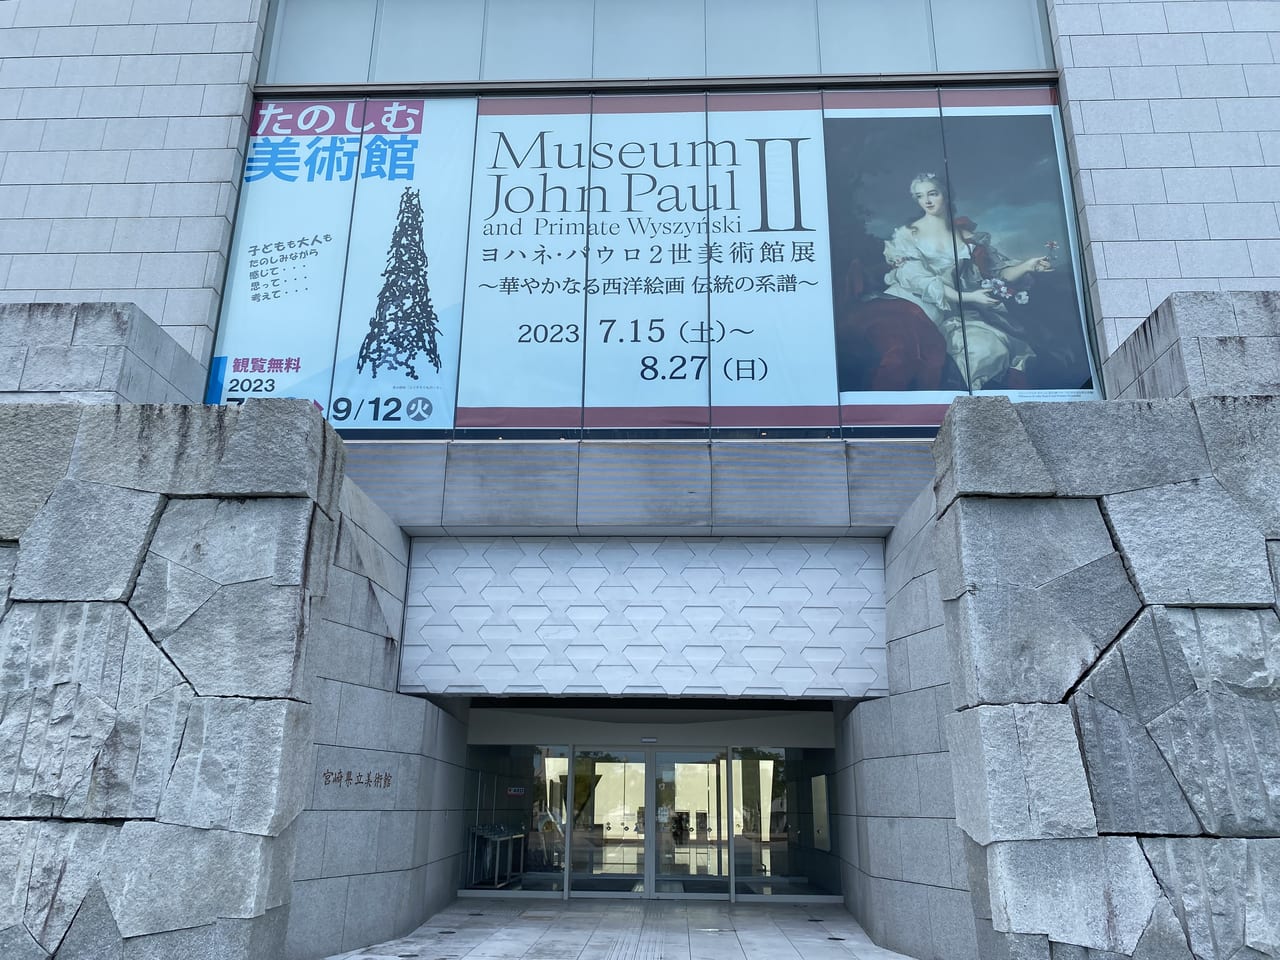 宮崎県立美術館 正面入口 たのしむ美術館 